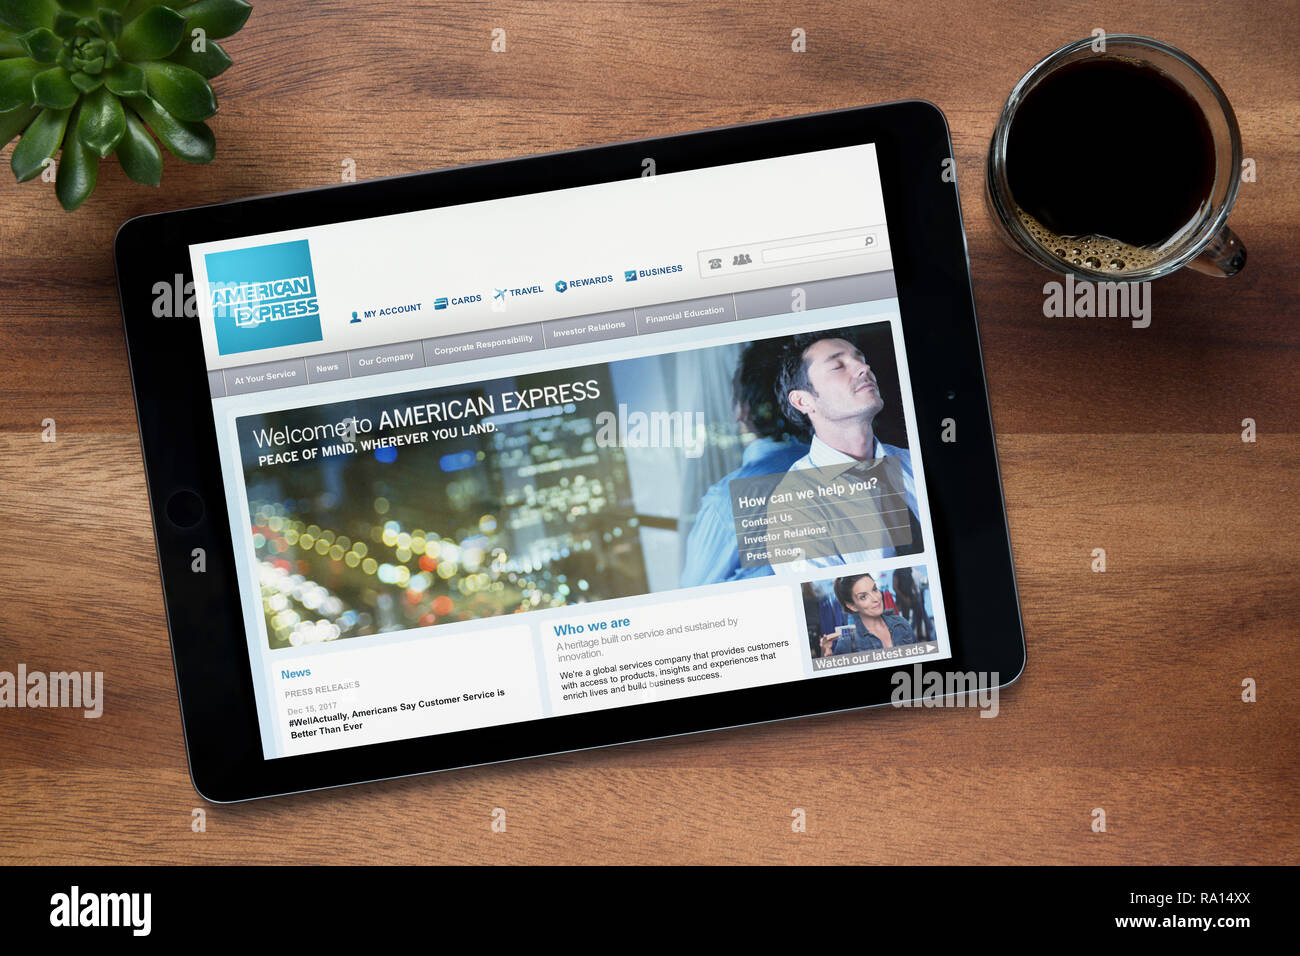 Die Website von American Express wird auf einem iPad Tablet gesehen, auf einer hölzernen Tisch zusammen mit einem Espresso und einem Haus Anlage (nur redaktionelle Nutzung). Stockfoto